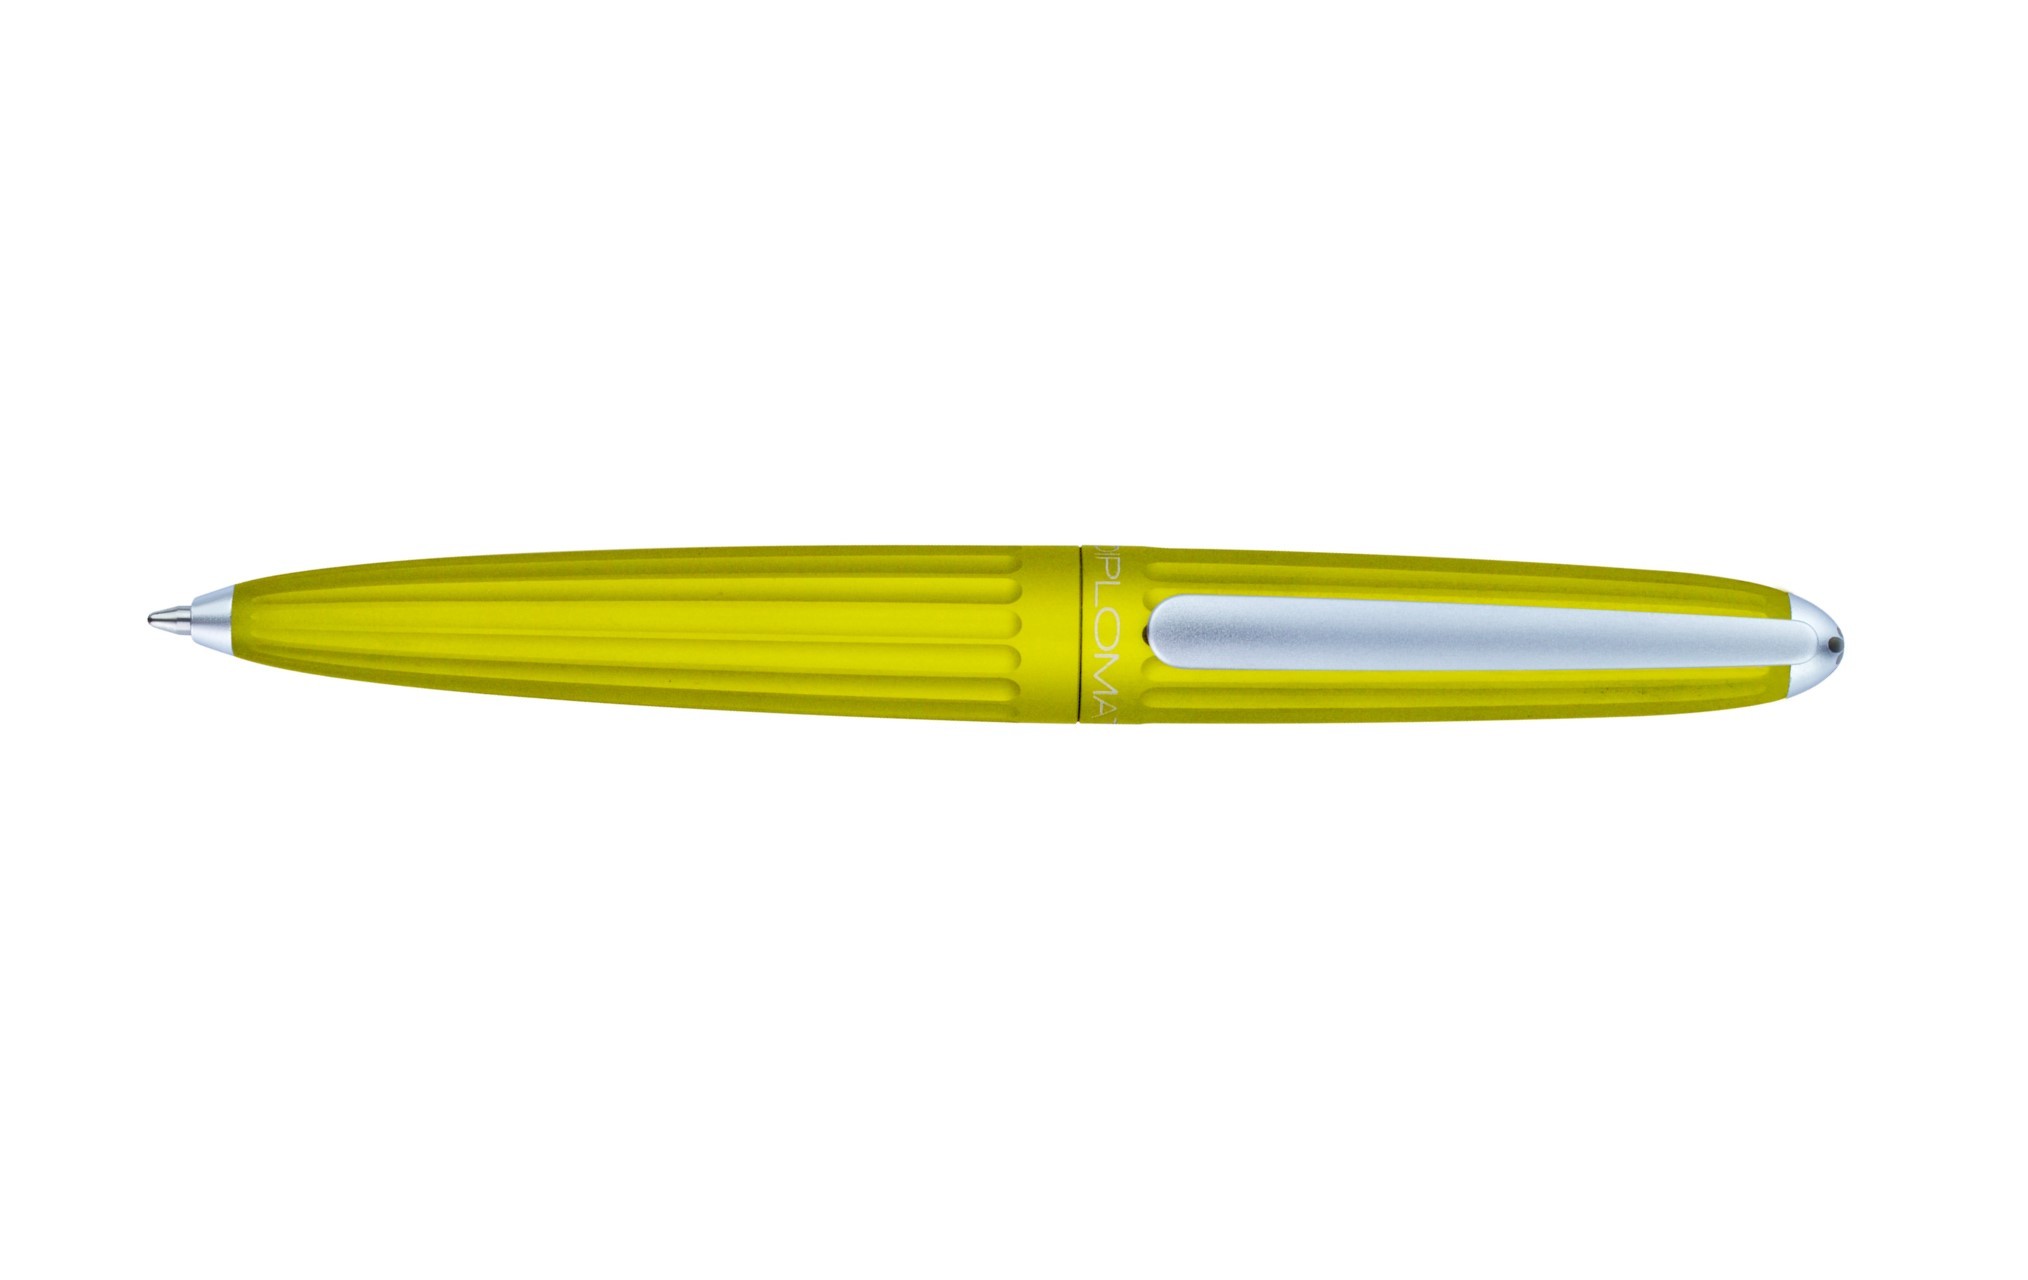 Diplomat Aero Citrus Ballpoint Pen